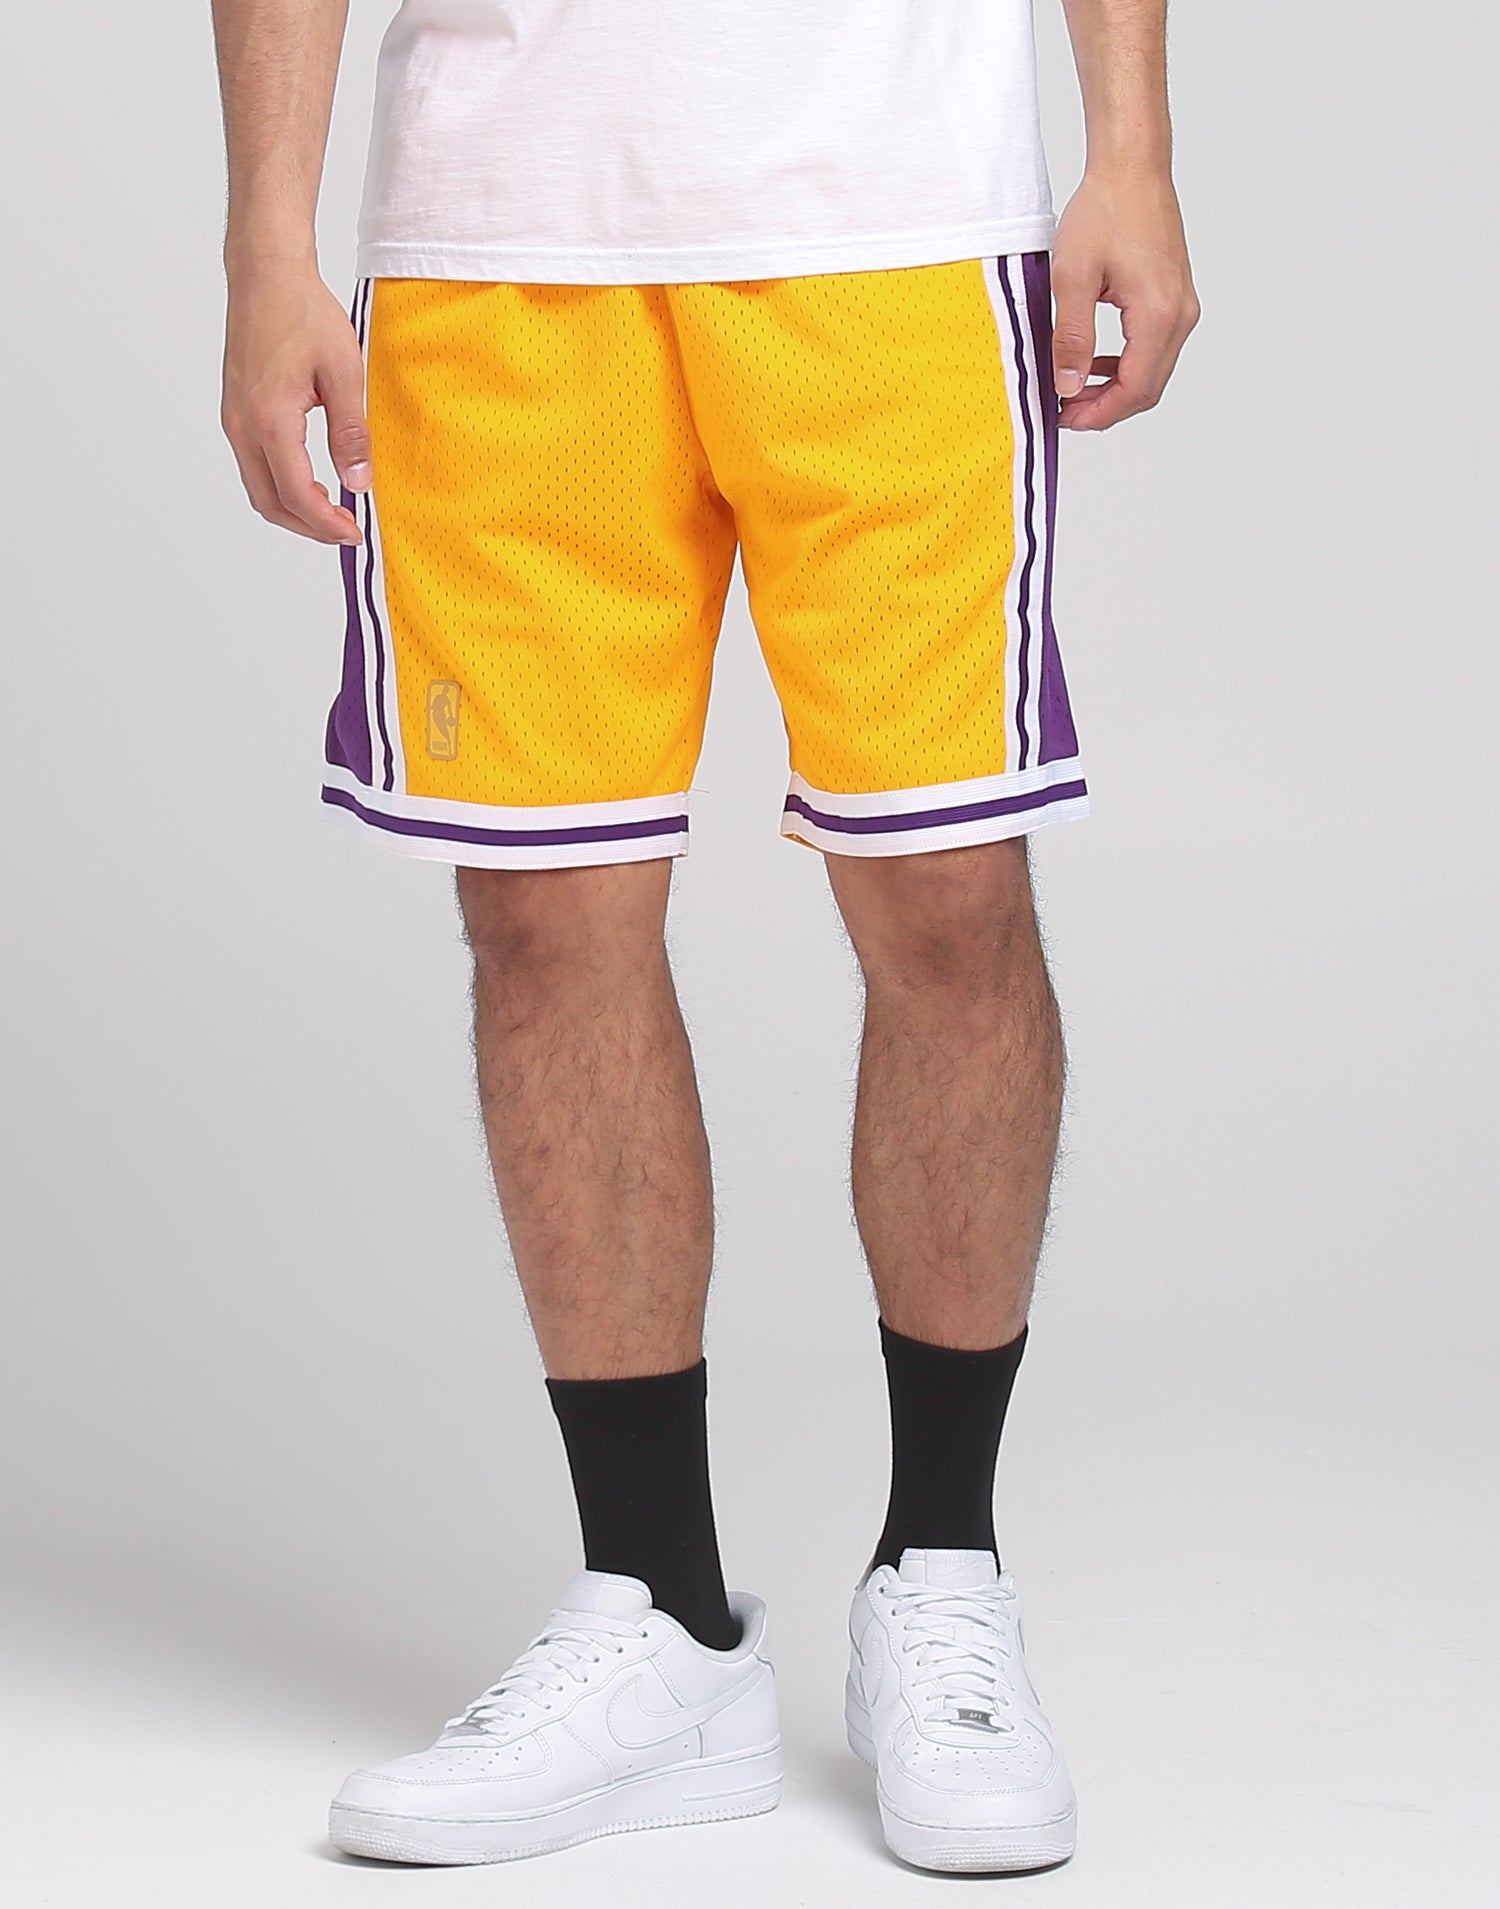 swingman lakers shorts